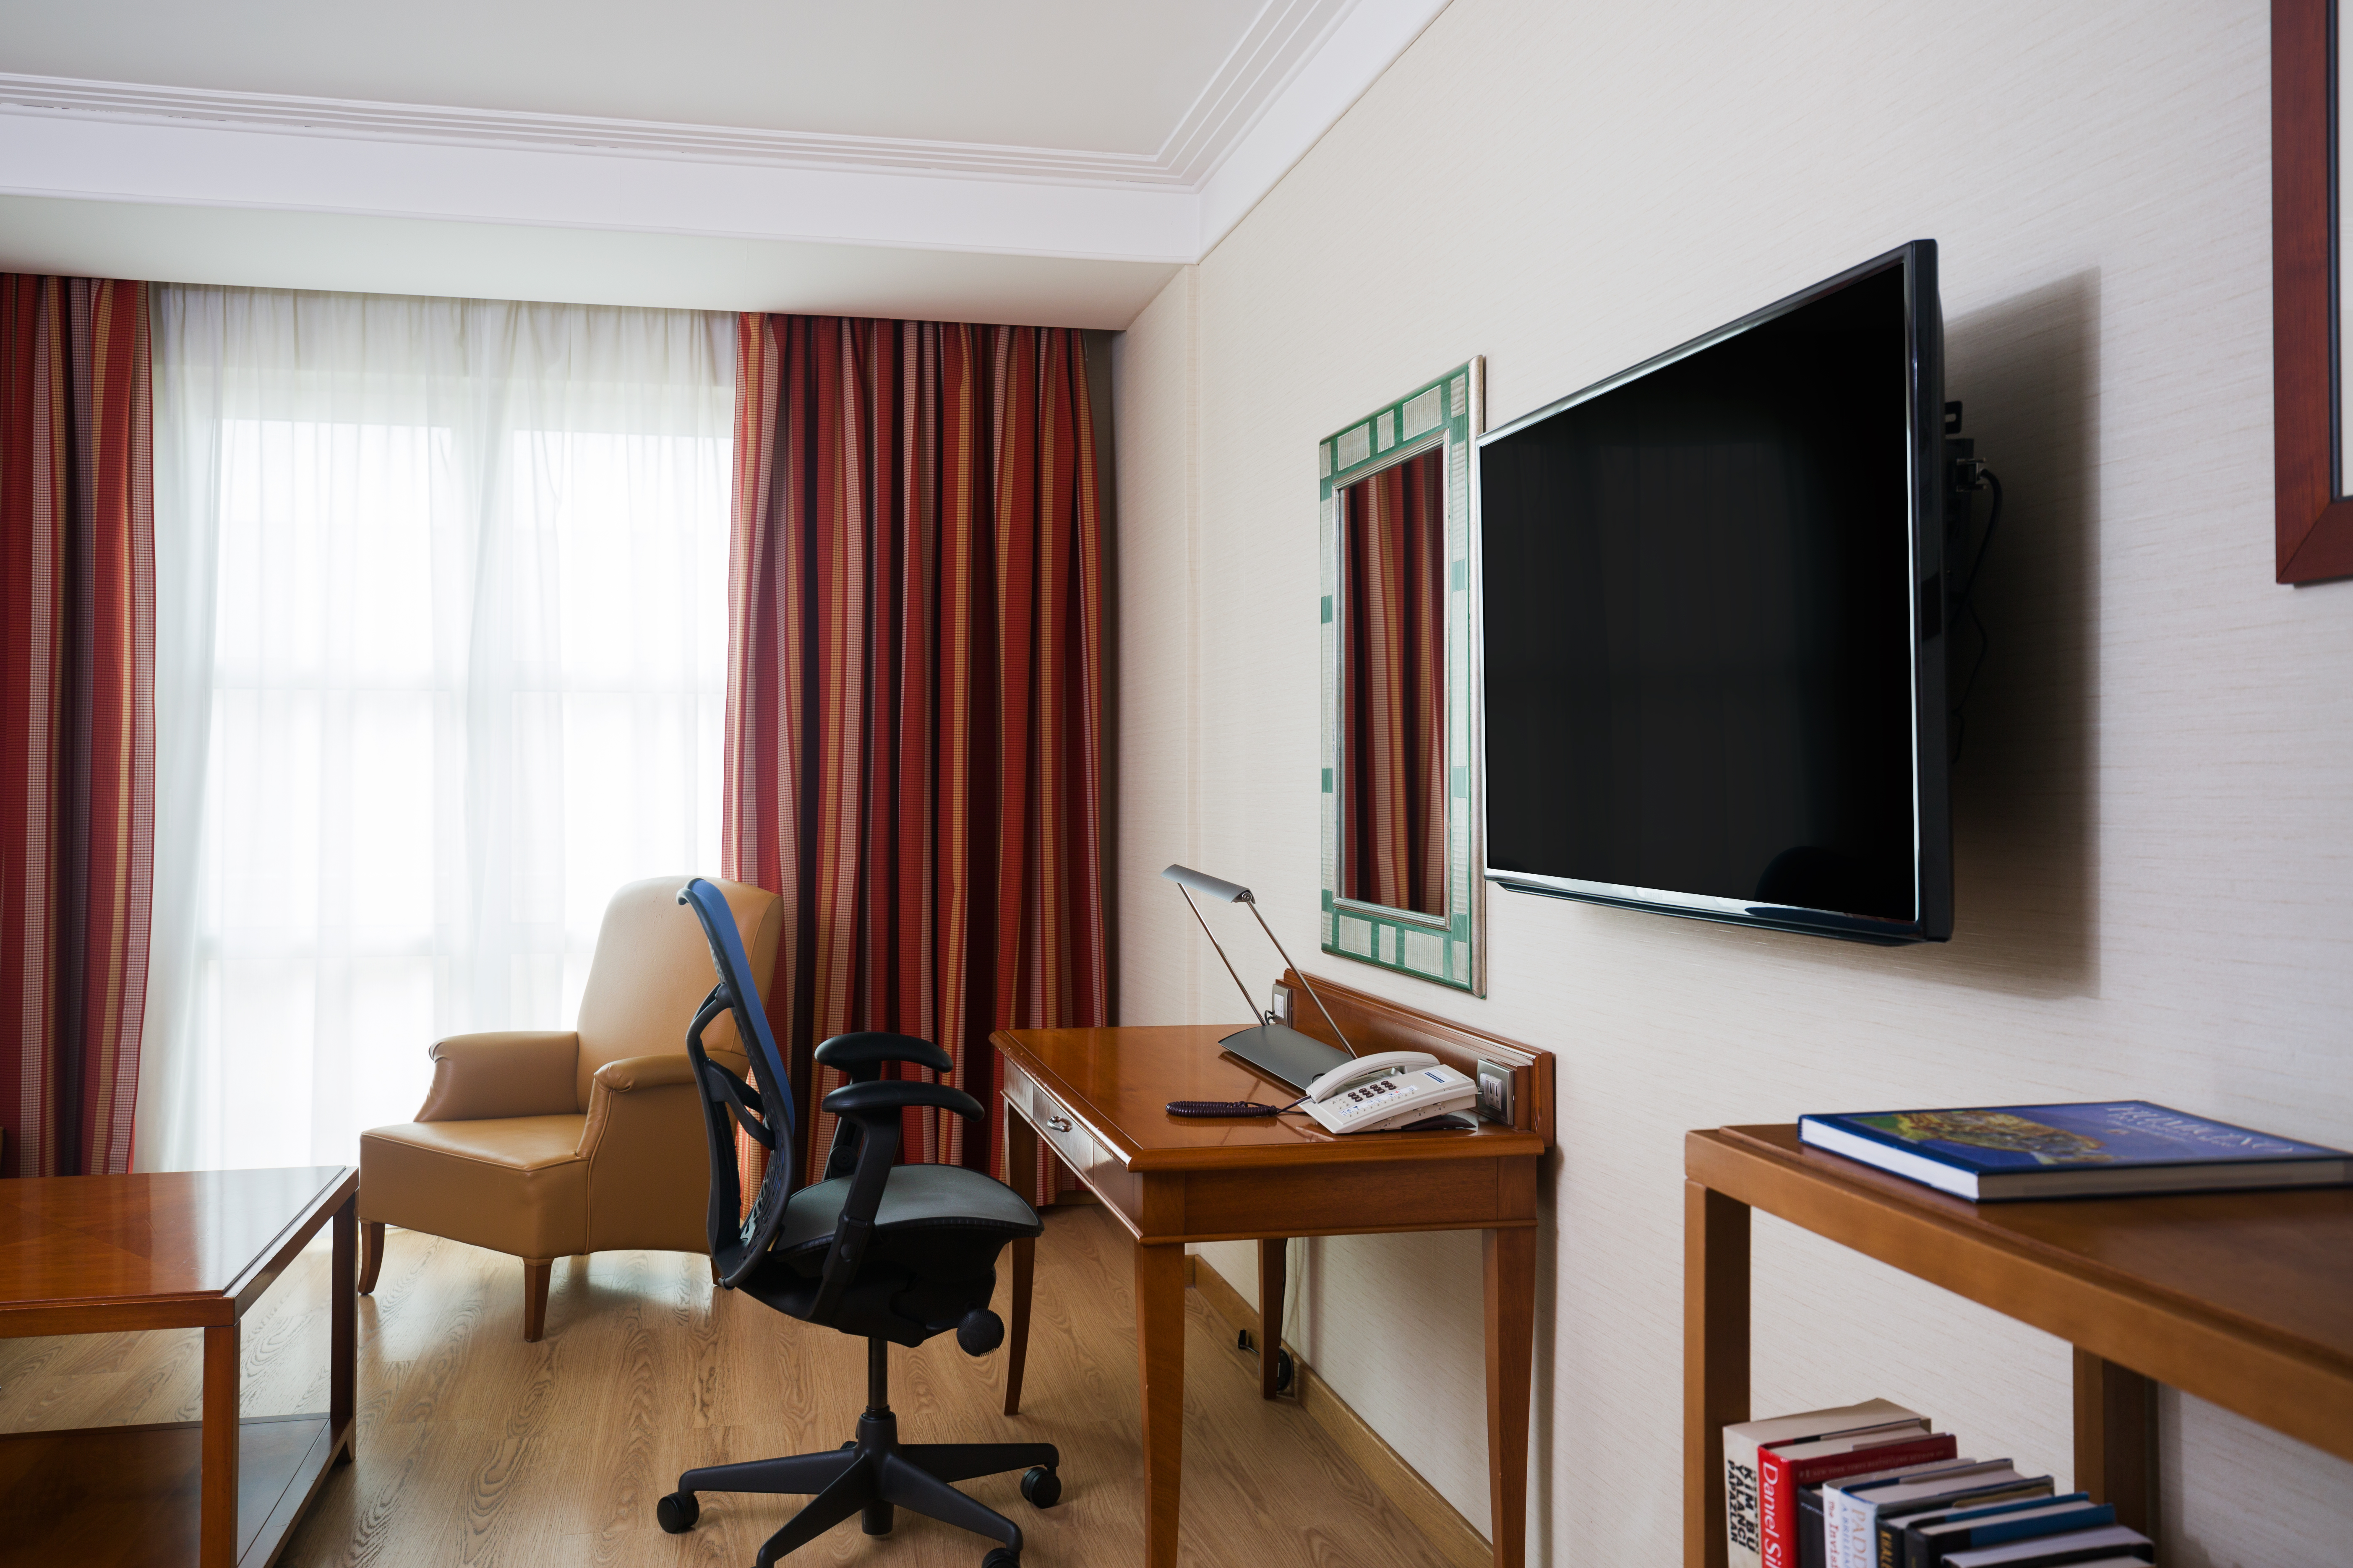 Suite - Scrivania, TV ad alta definizione a parete, poltrona e tavolino